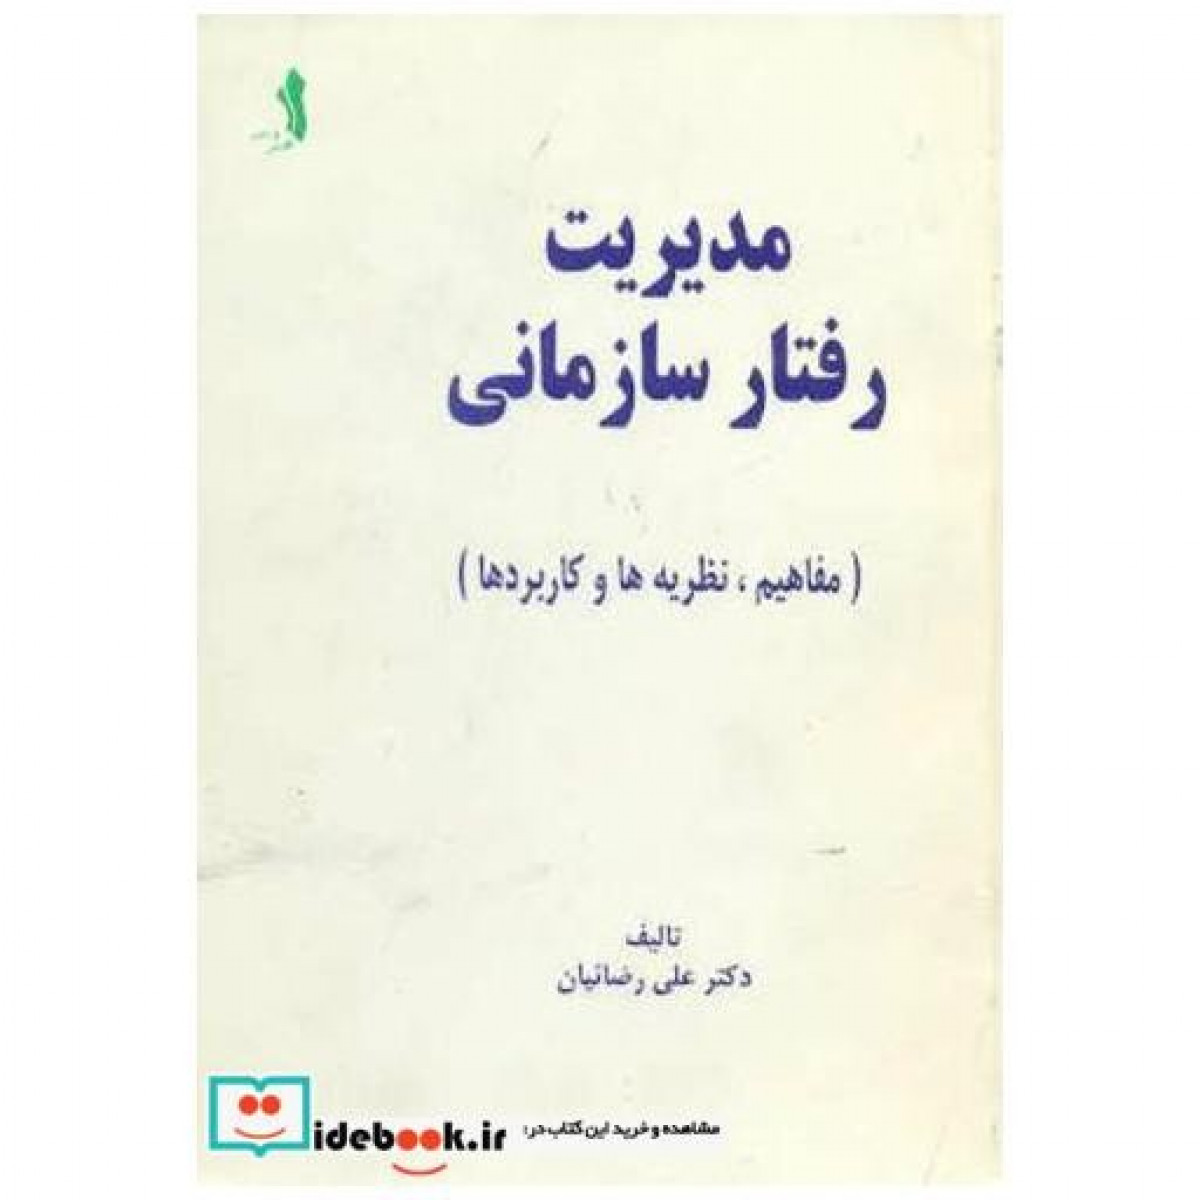 مدیریت رفتارسازمانی/علی رضاییان/نشرعلم وادب/ ویرایش قدیم